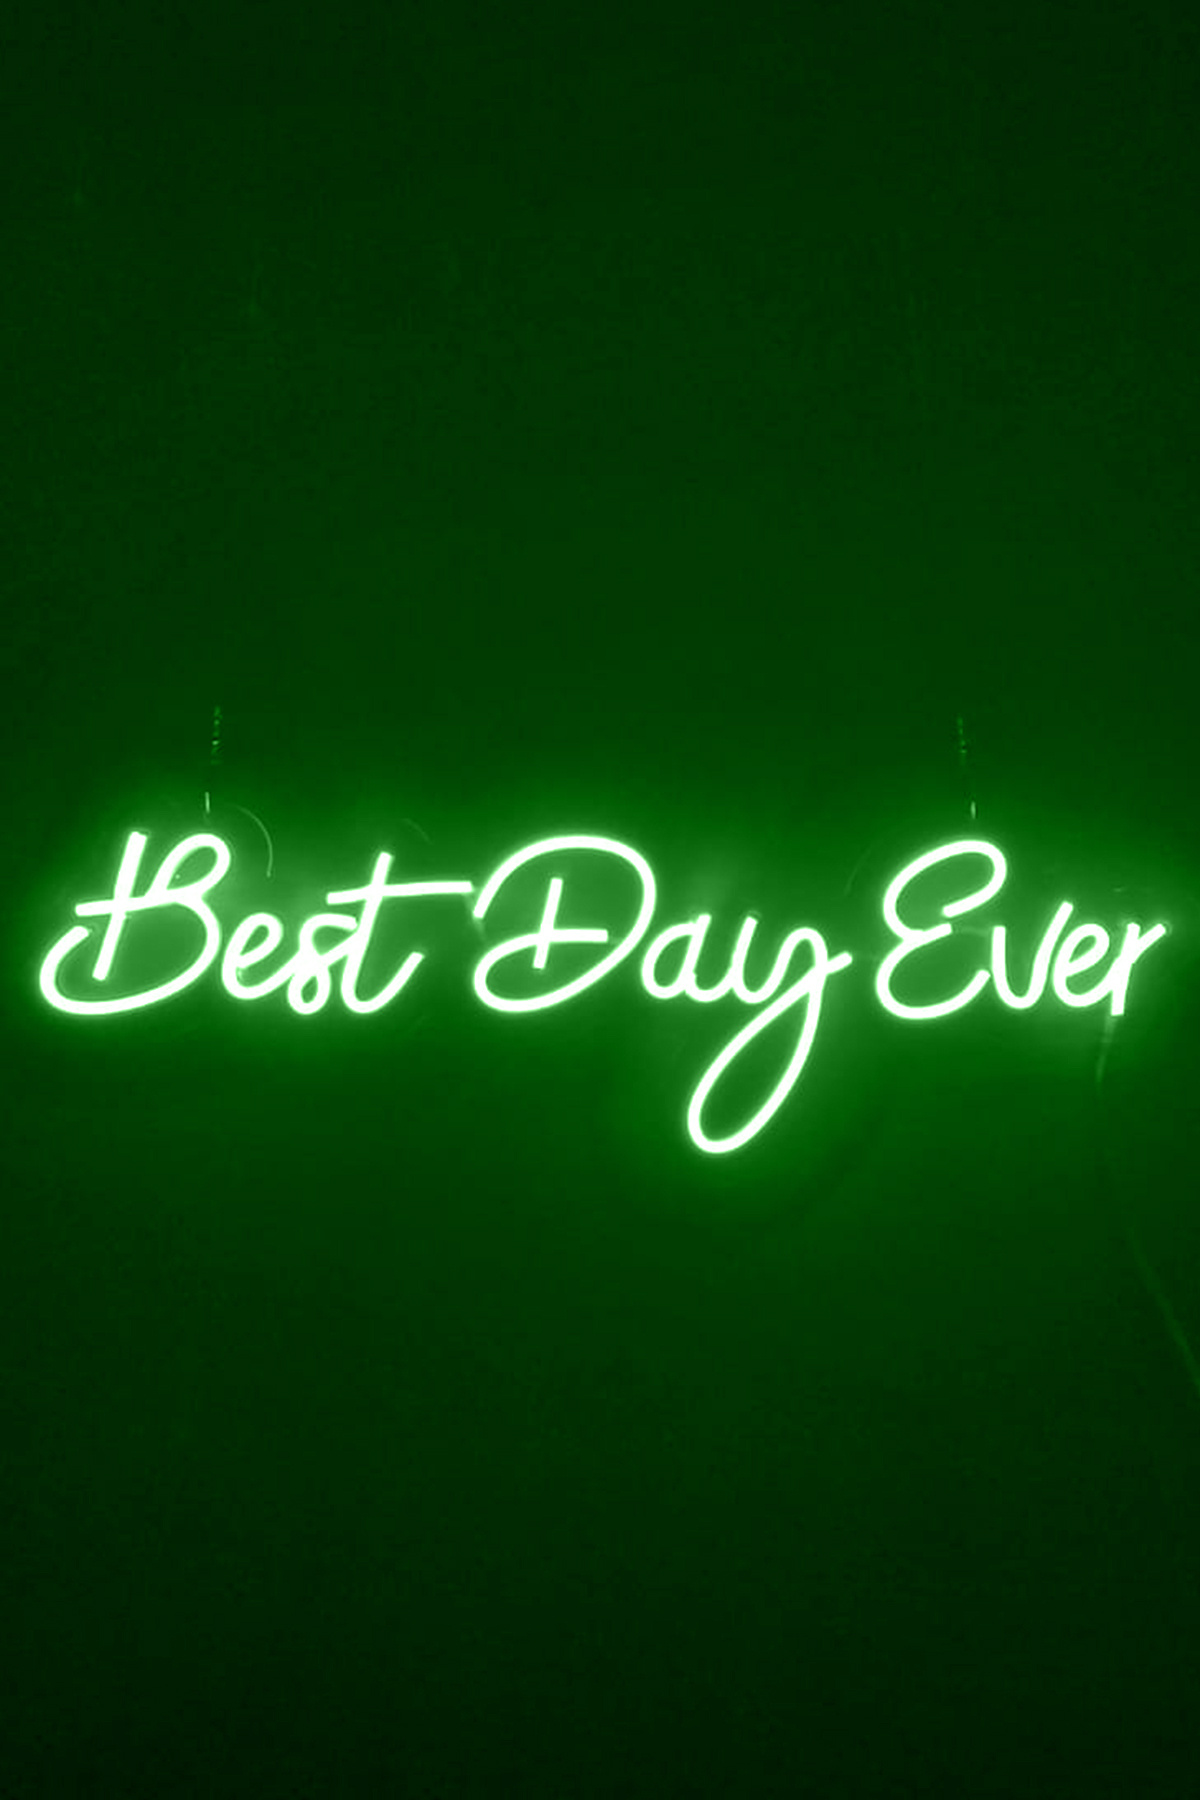 Best Day Ever Yazılı Neon Led Işıklı Tablo Düğün Parti ve Kutlama Duvar Dekorasyon Ürünleri